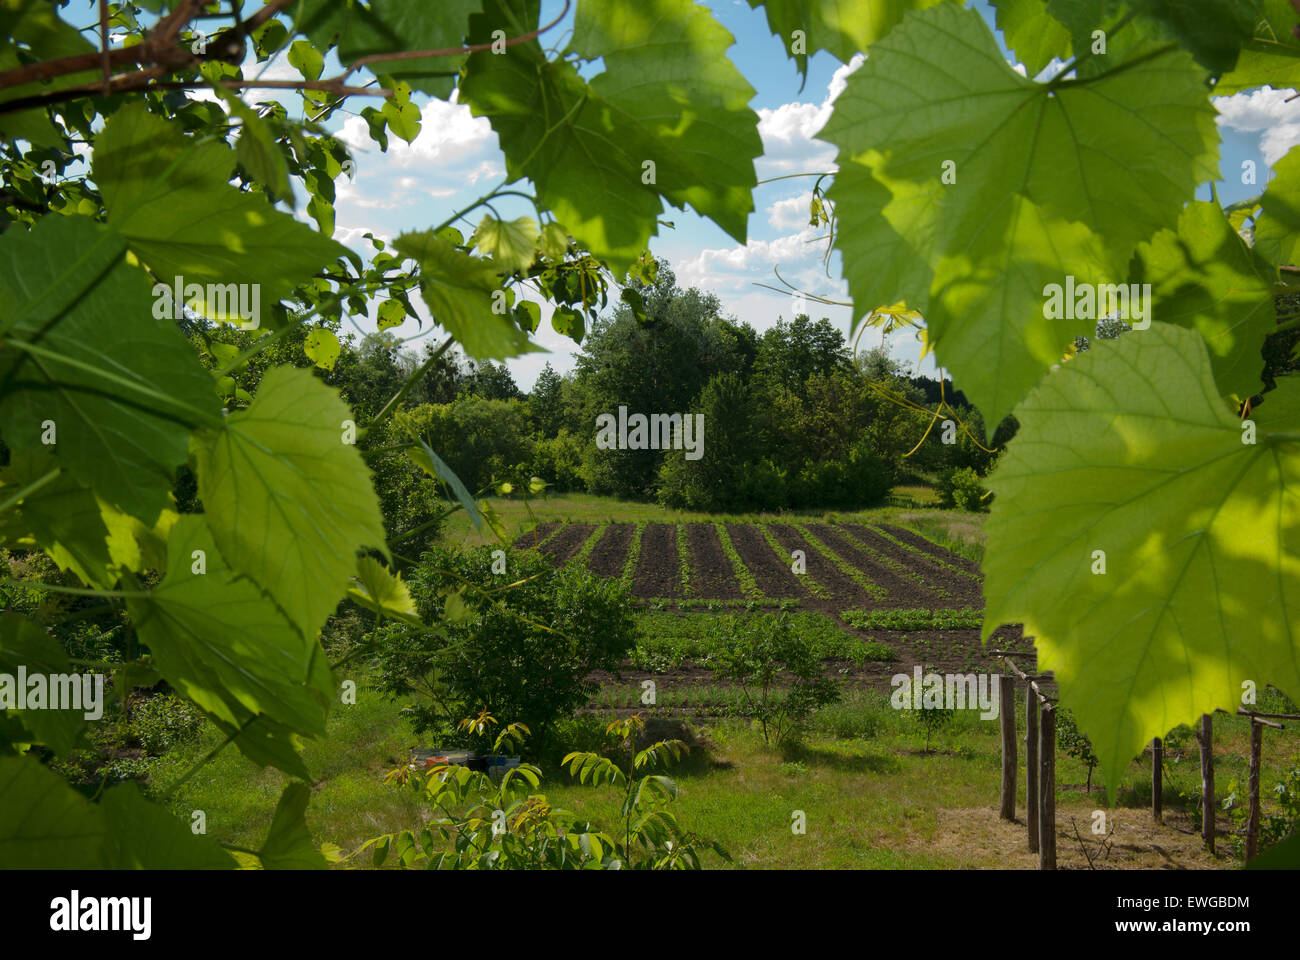 Paysage rural avec vue sur le jardin grâce à des raisins. Banque D'Images